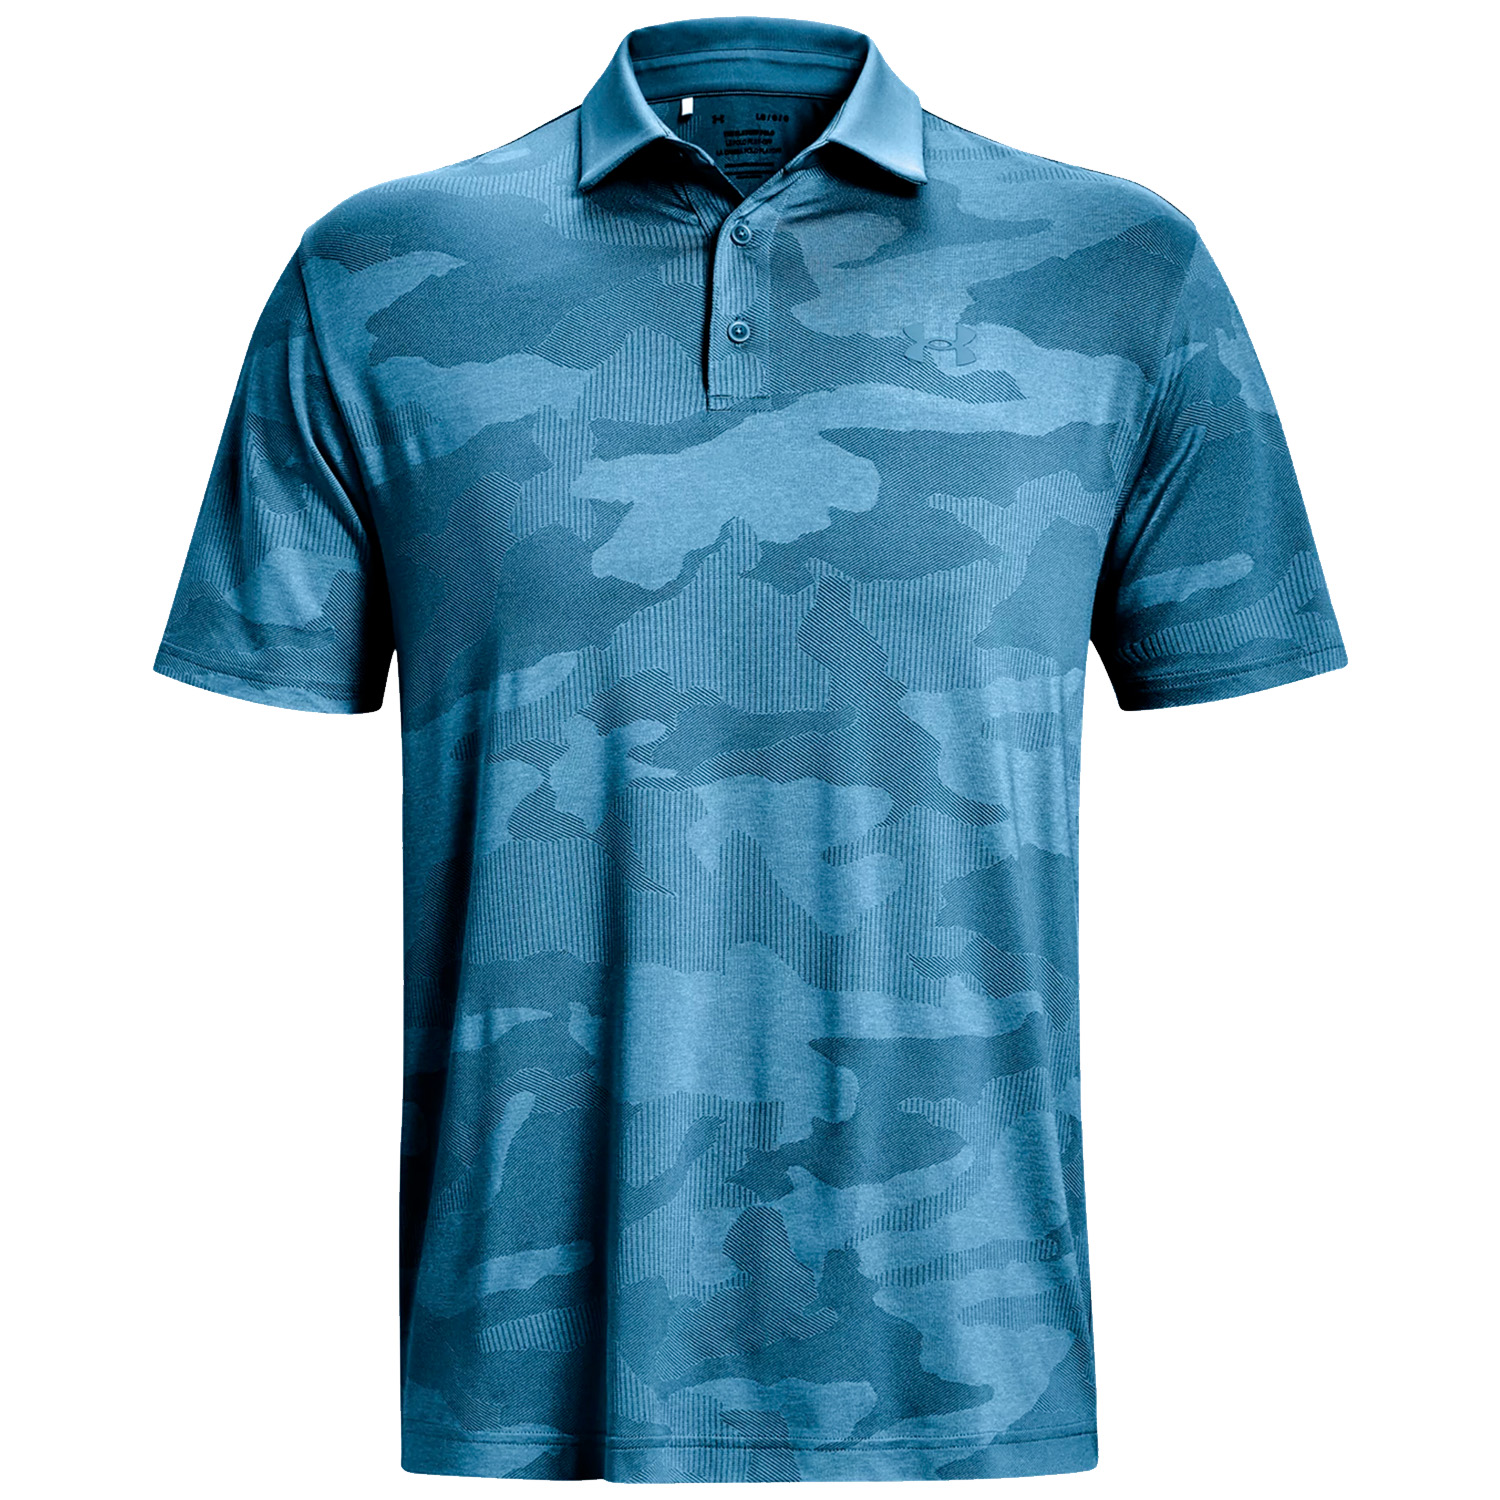 Under Armour Mens UA Playoff 2.0 Camo Jacquard Golf Polo Shirt  - Cosmic Blue